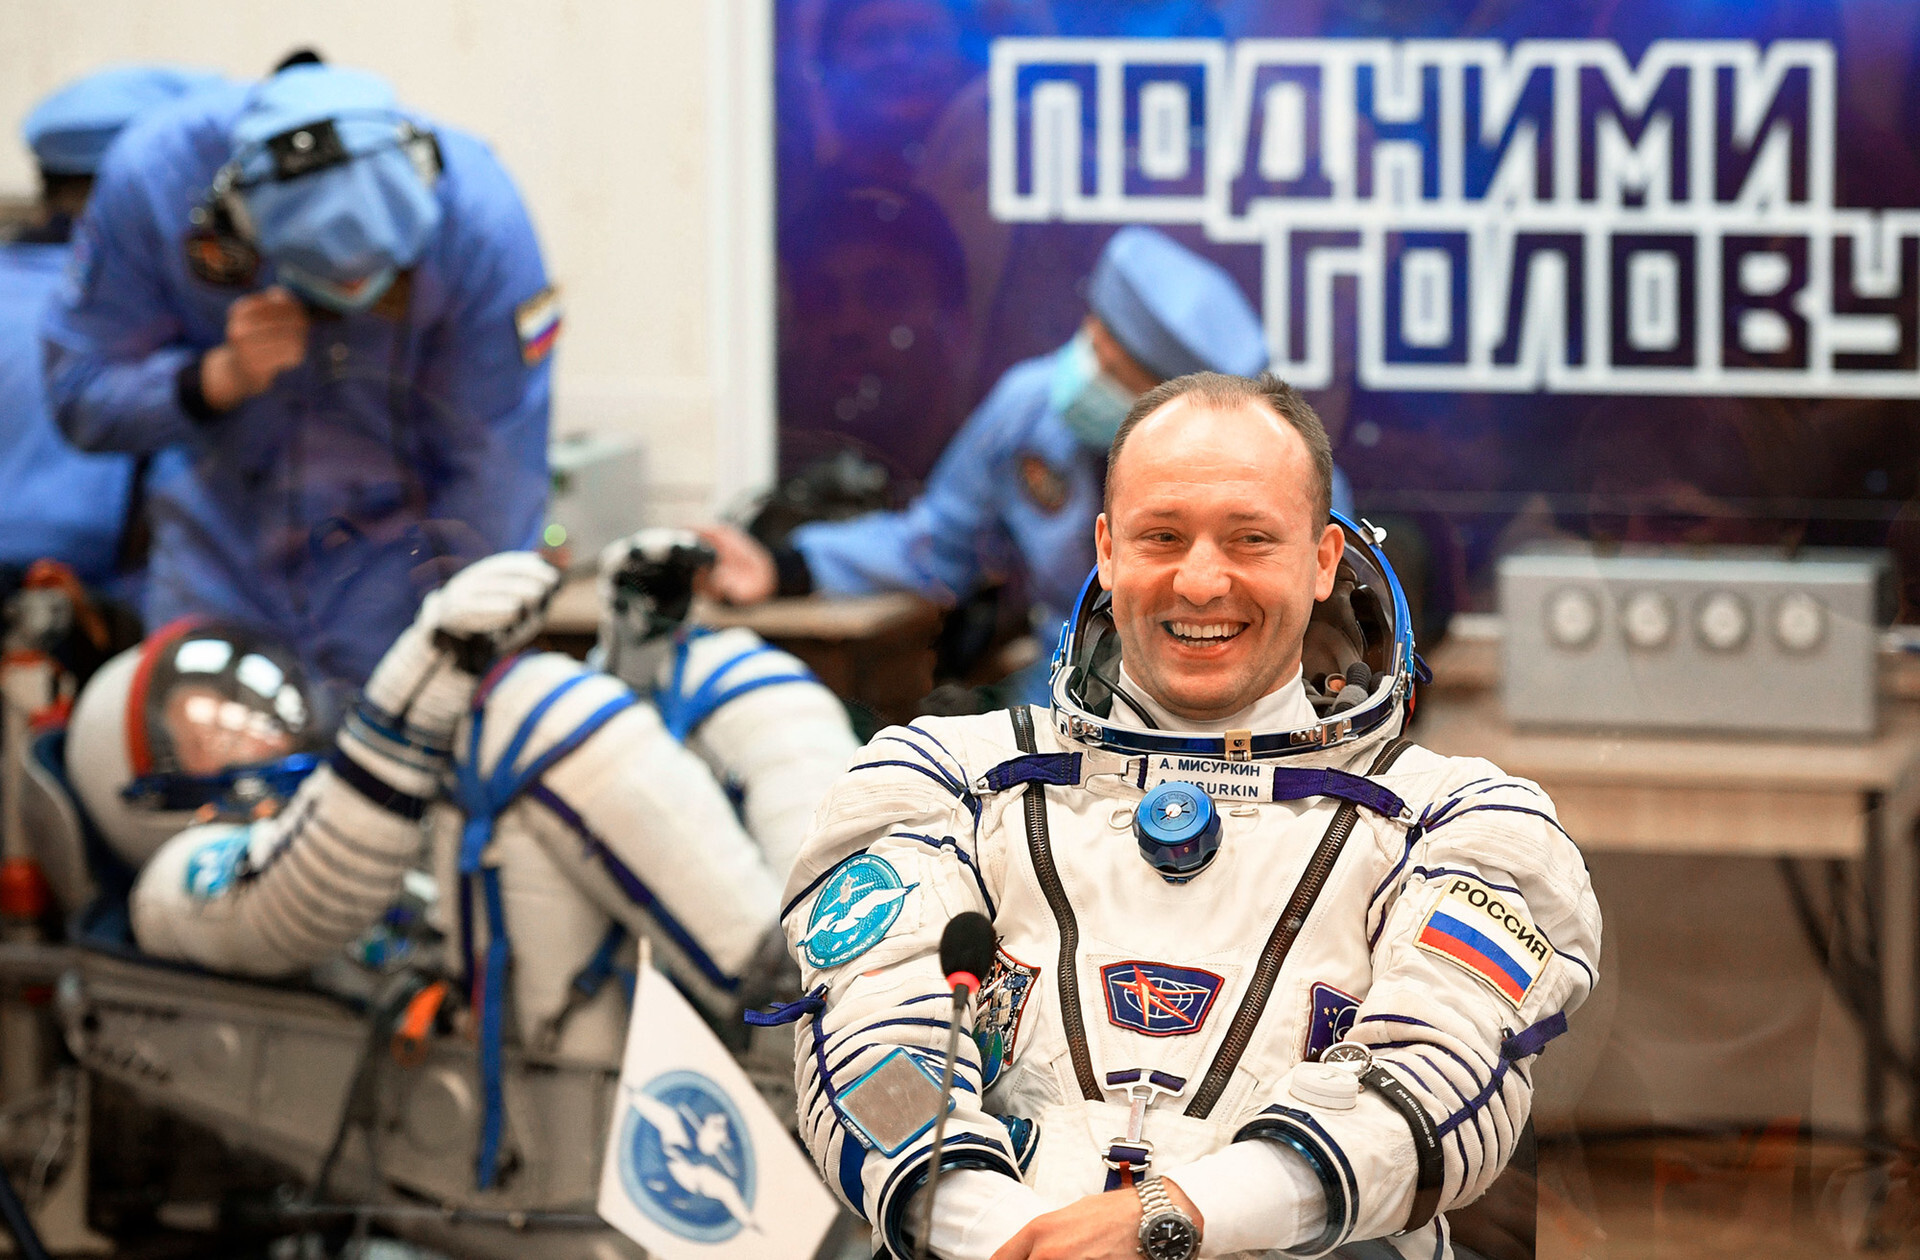 Alexánder Misurkin, cosmonauta de Roscosmos y miembro de la tripulación principal de la Expedición 53/54 a la Estación Espacial Internacional